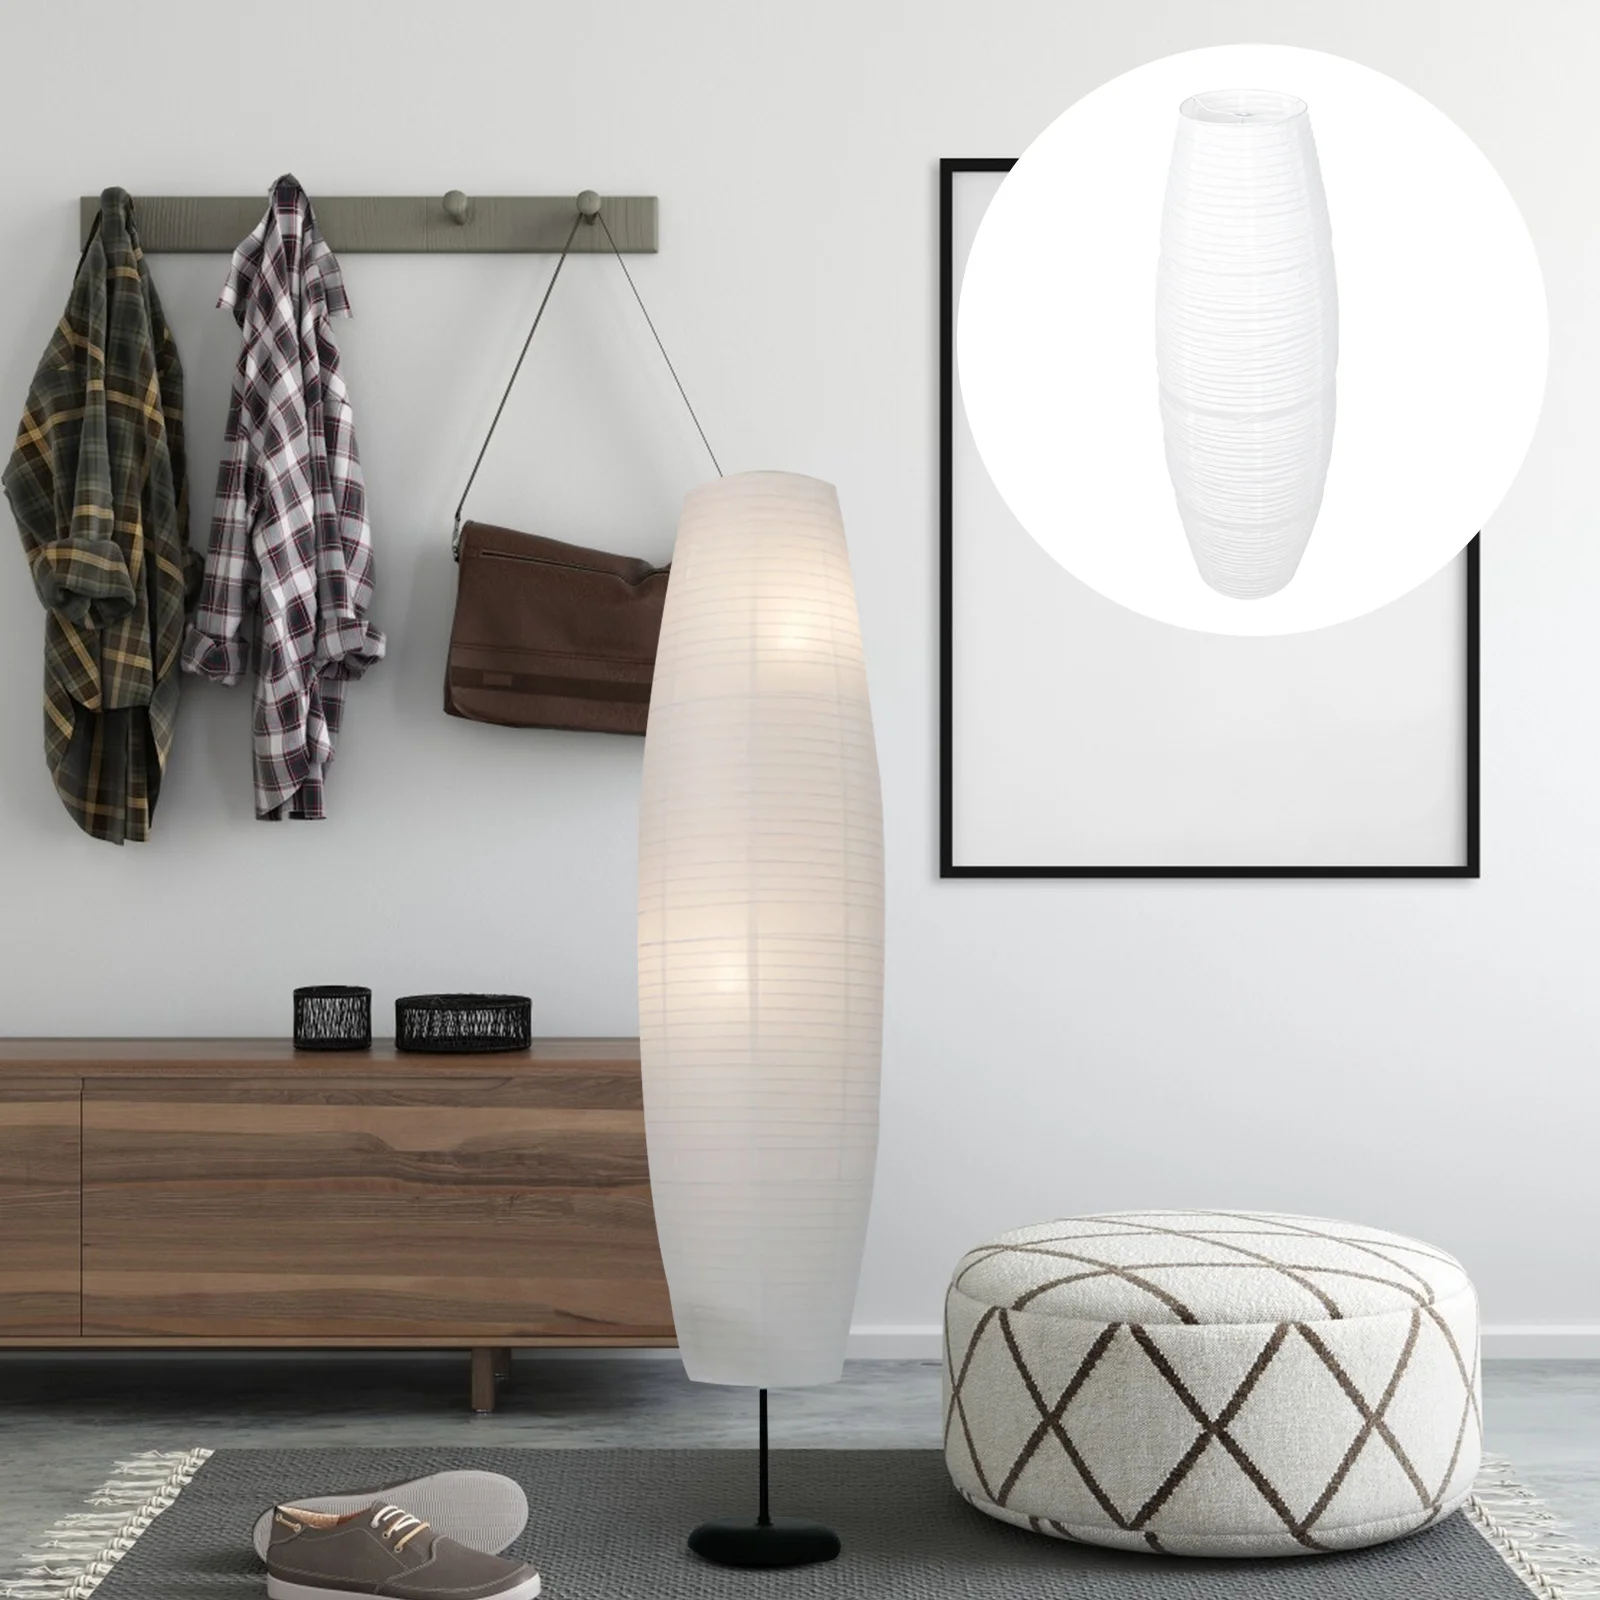 

Ламповый напольный светильник с оболочкой из бумаги, вертикальный абажур, рисовые японские Сменные светильники, Стильная современная Высокая люстра